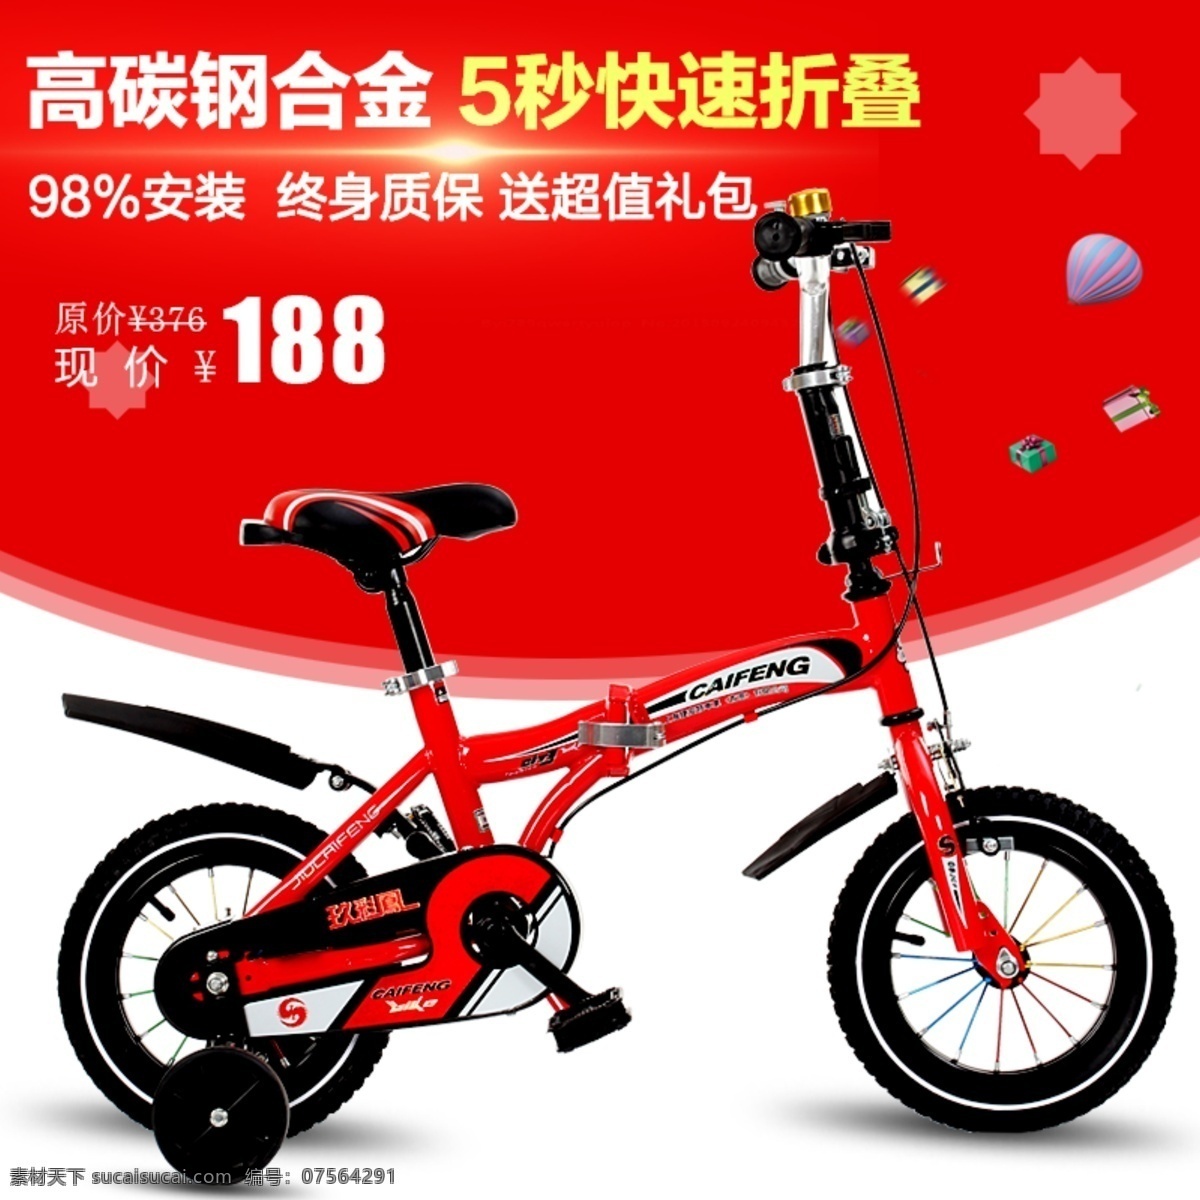 折叠车热卖 淘宝主图 淘宝设计 自行车设计 红色